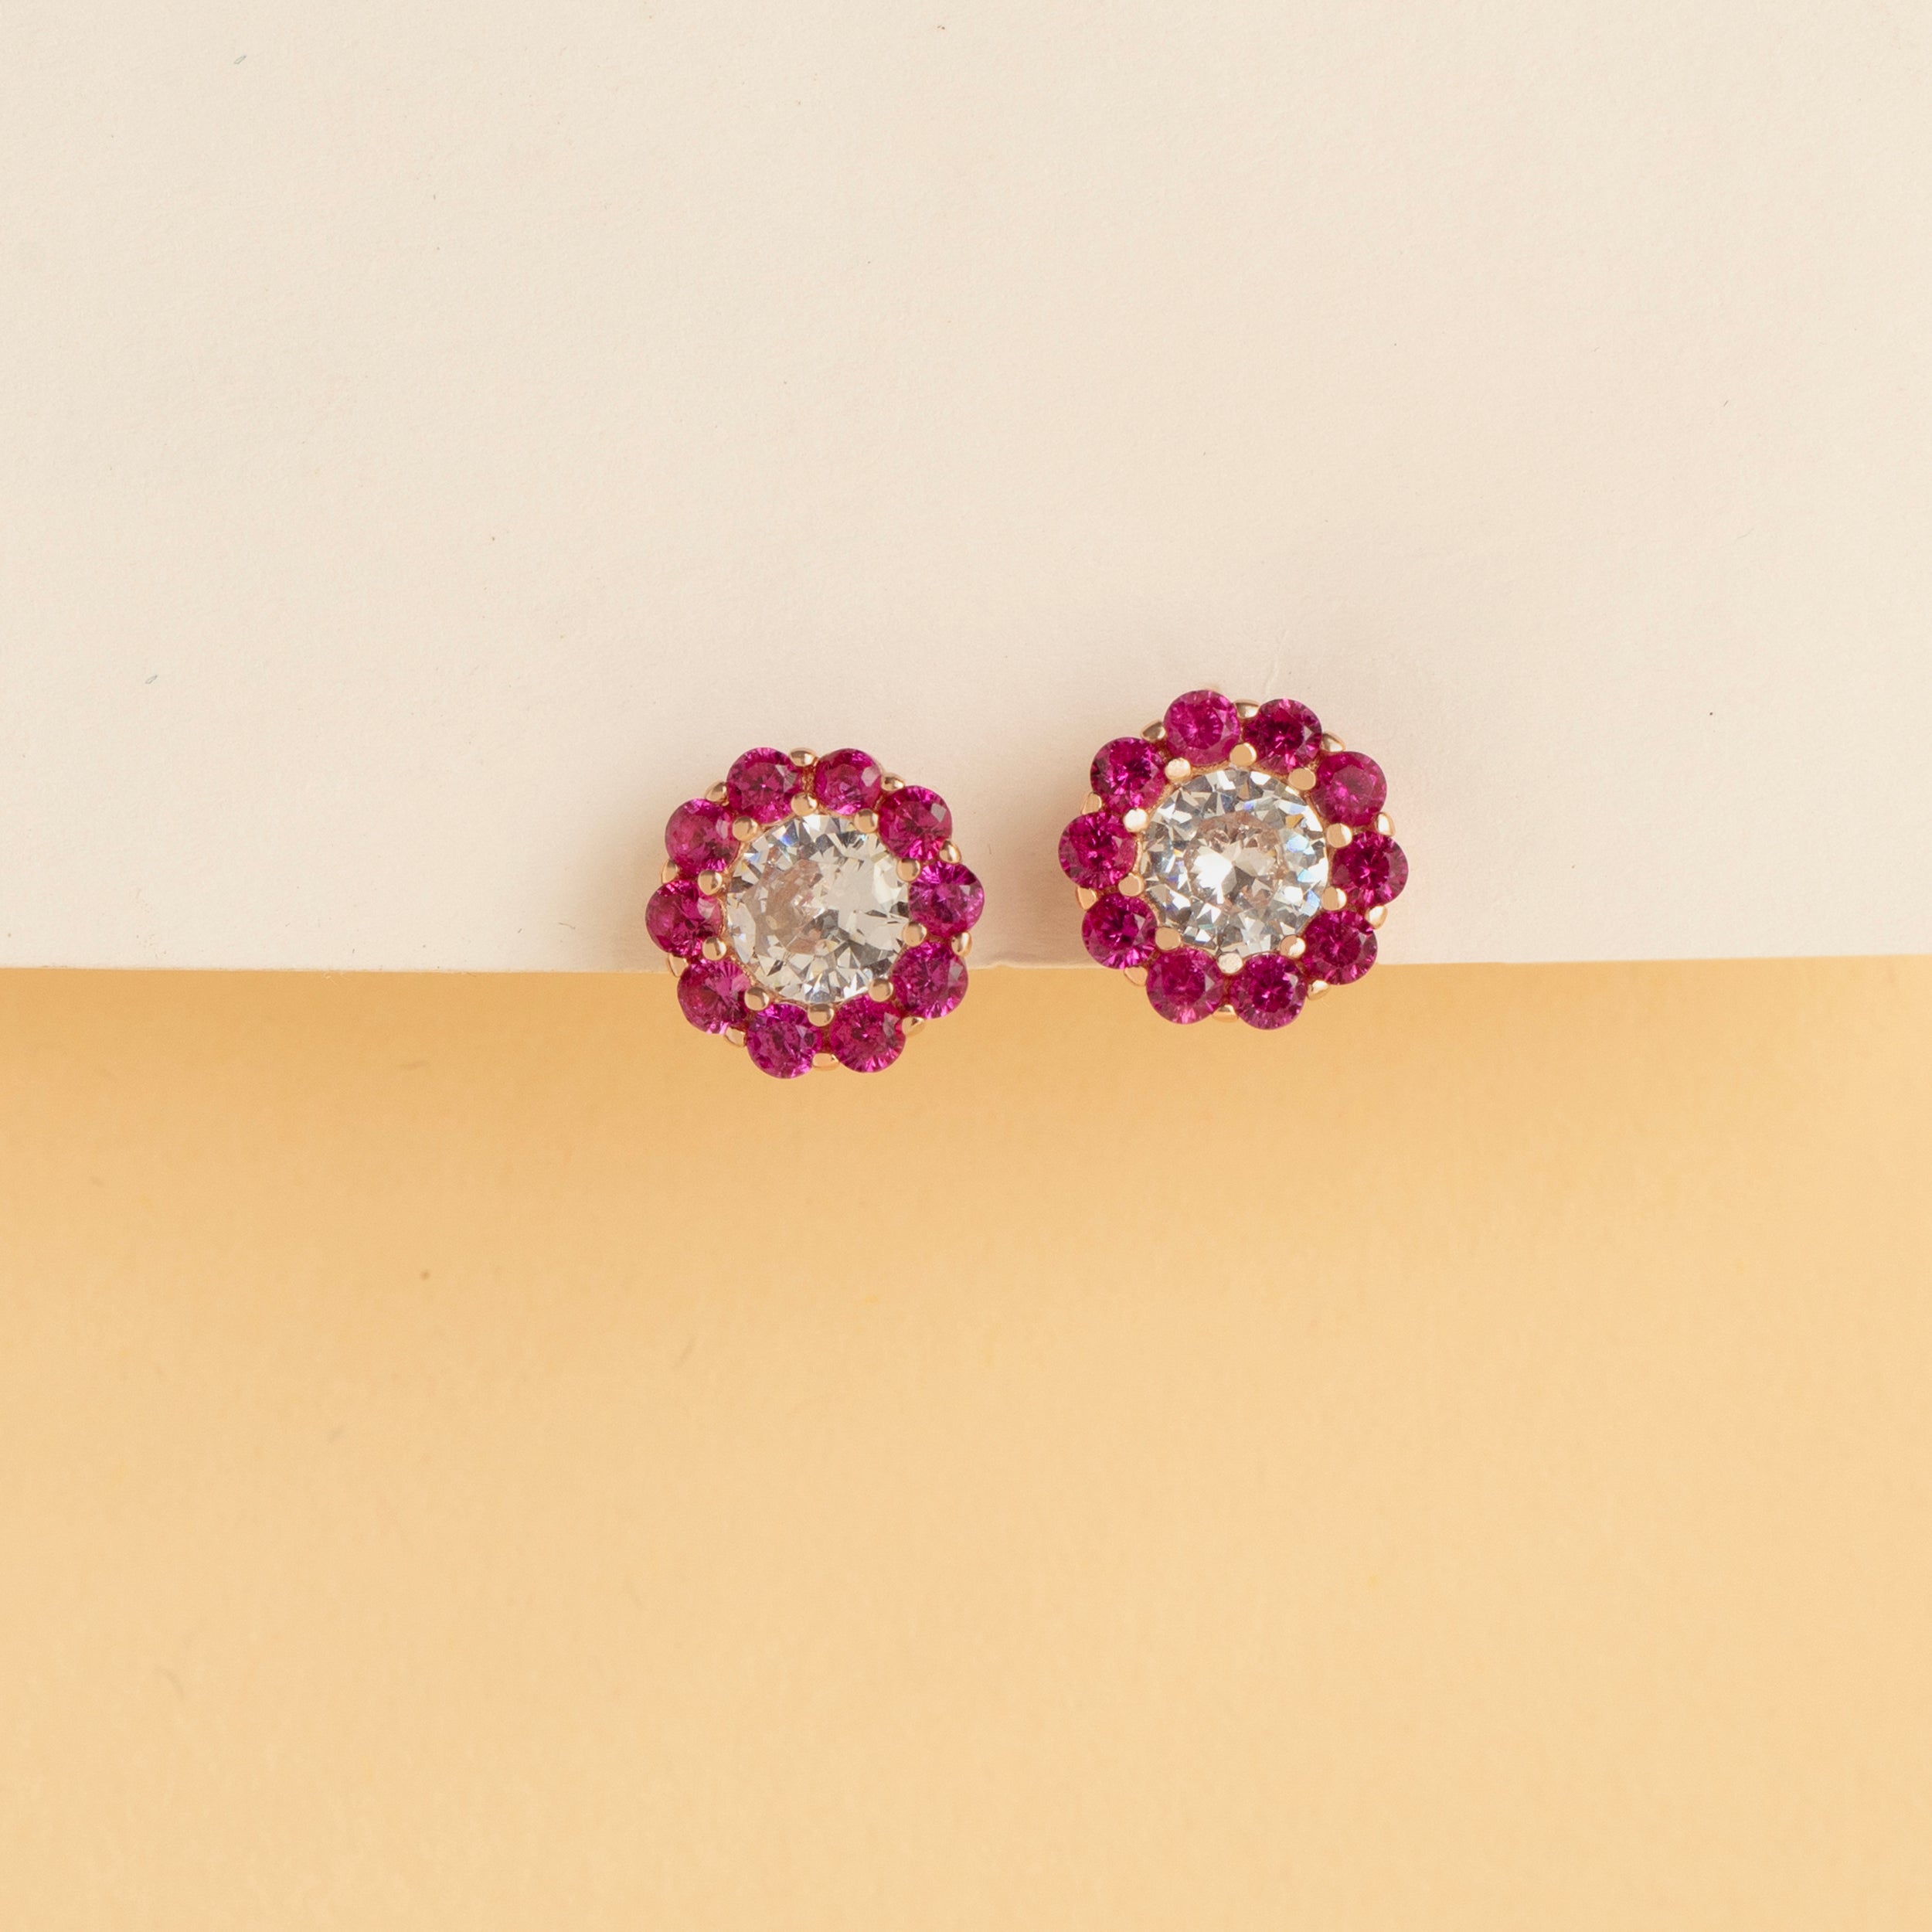 Chic Purple Gemstone Stud Earrings in Sterling Silver | SKU: 0019272566, 0019272481, 0019272511